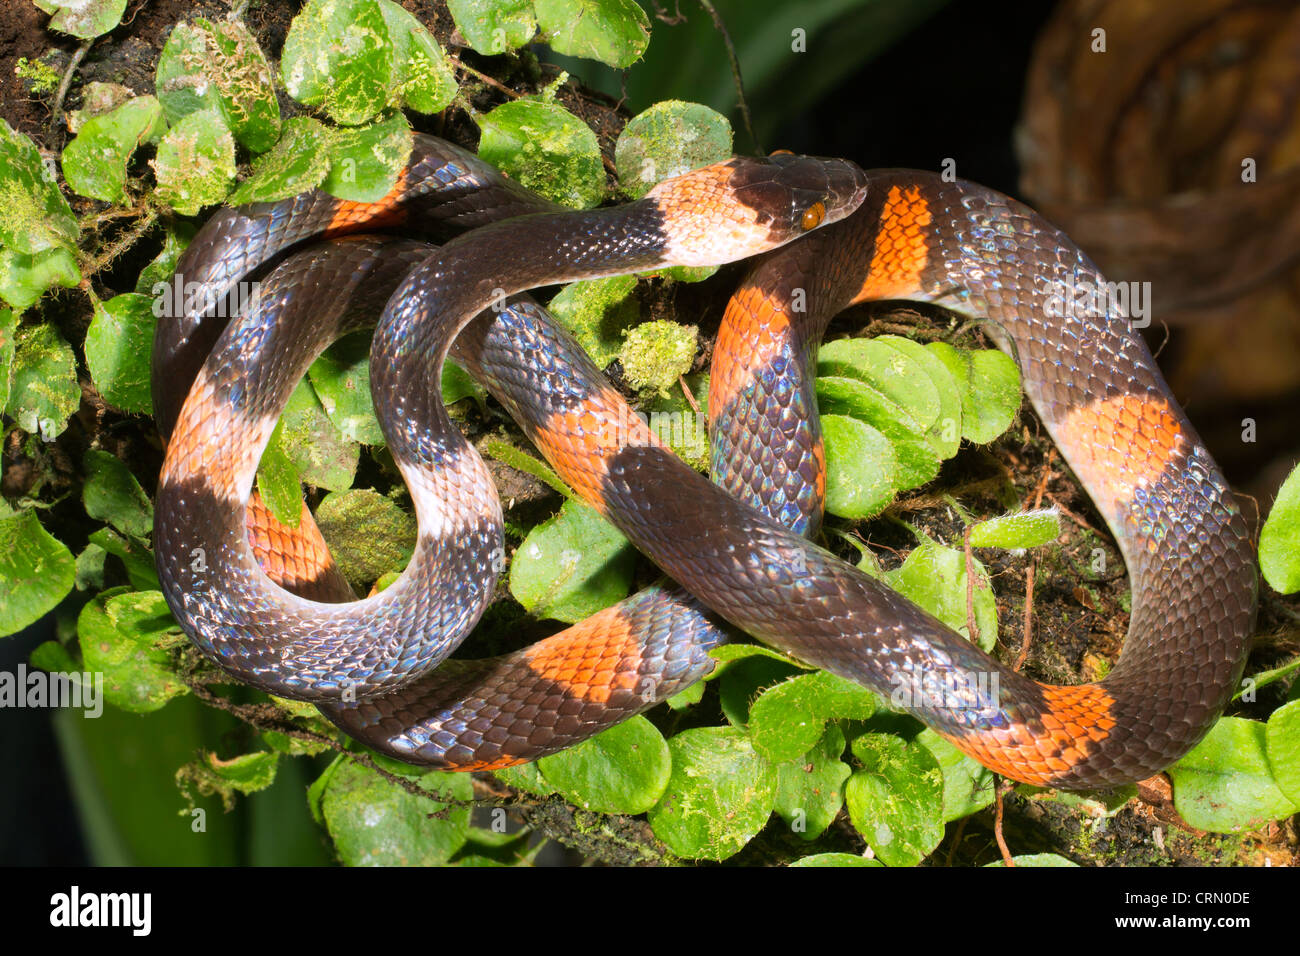 Banded calico snake (Oxyrhopus petola) in the Ecuadorian Amazon Stock Photo